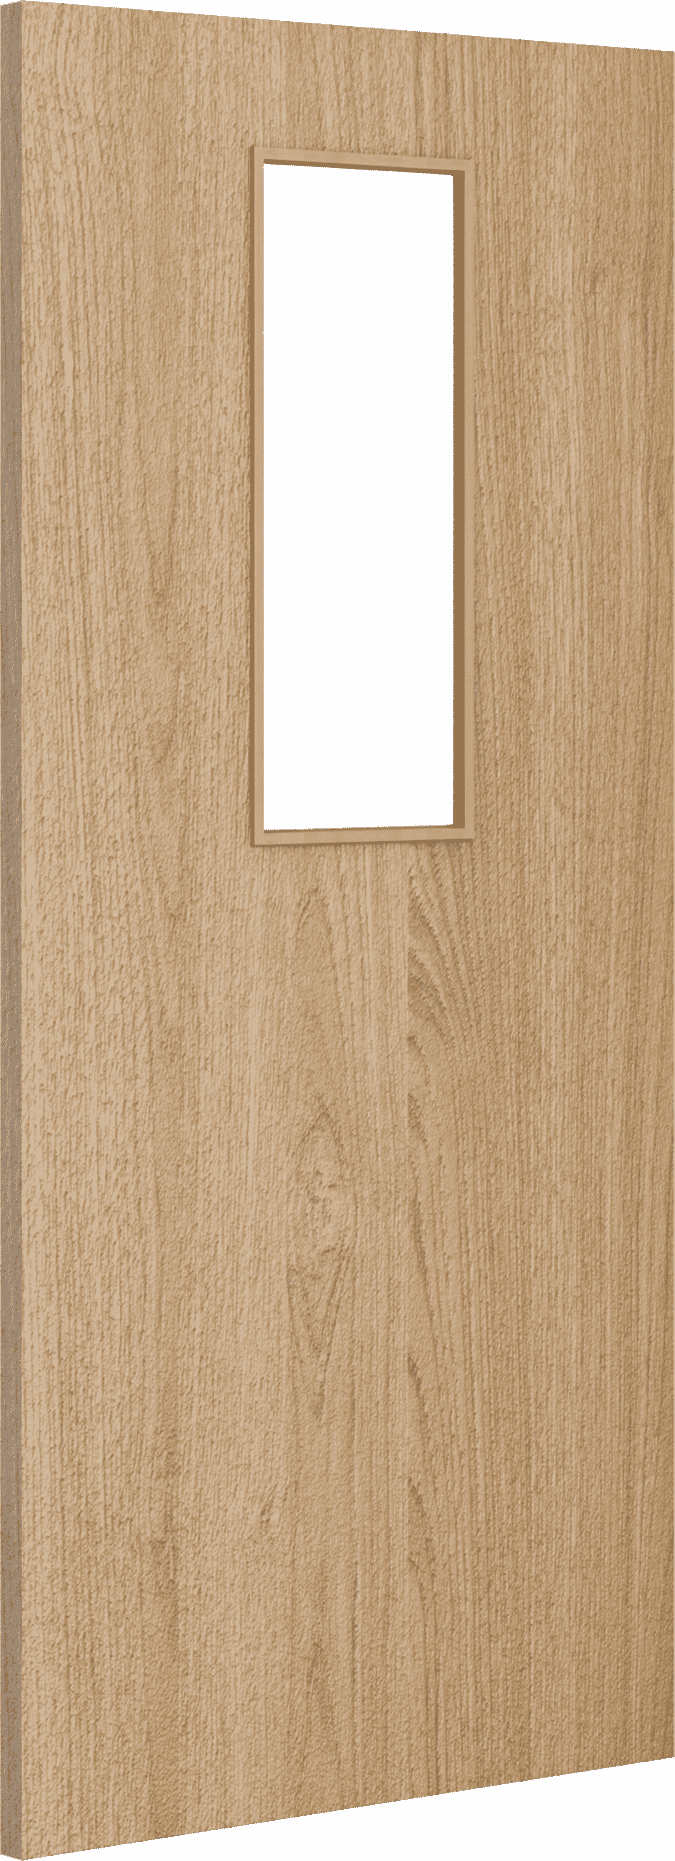 2040mm x 926mm x 54mm Architectural Oak 14 Clear Glazed - Prefinished FD60 Fire Door Blank